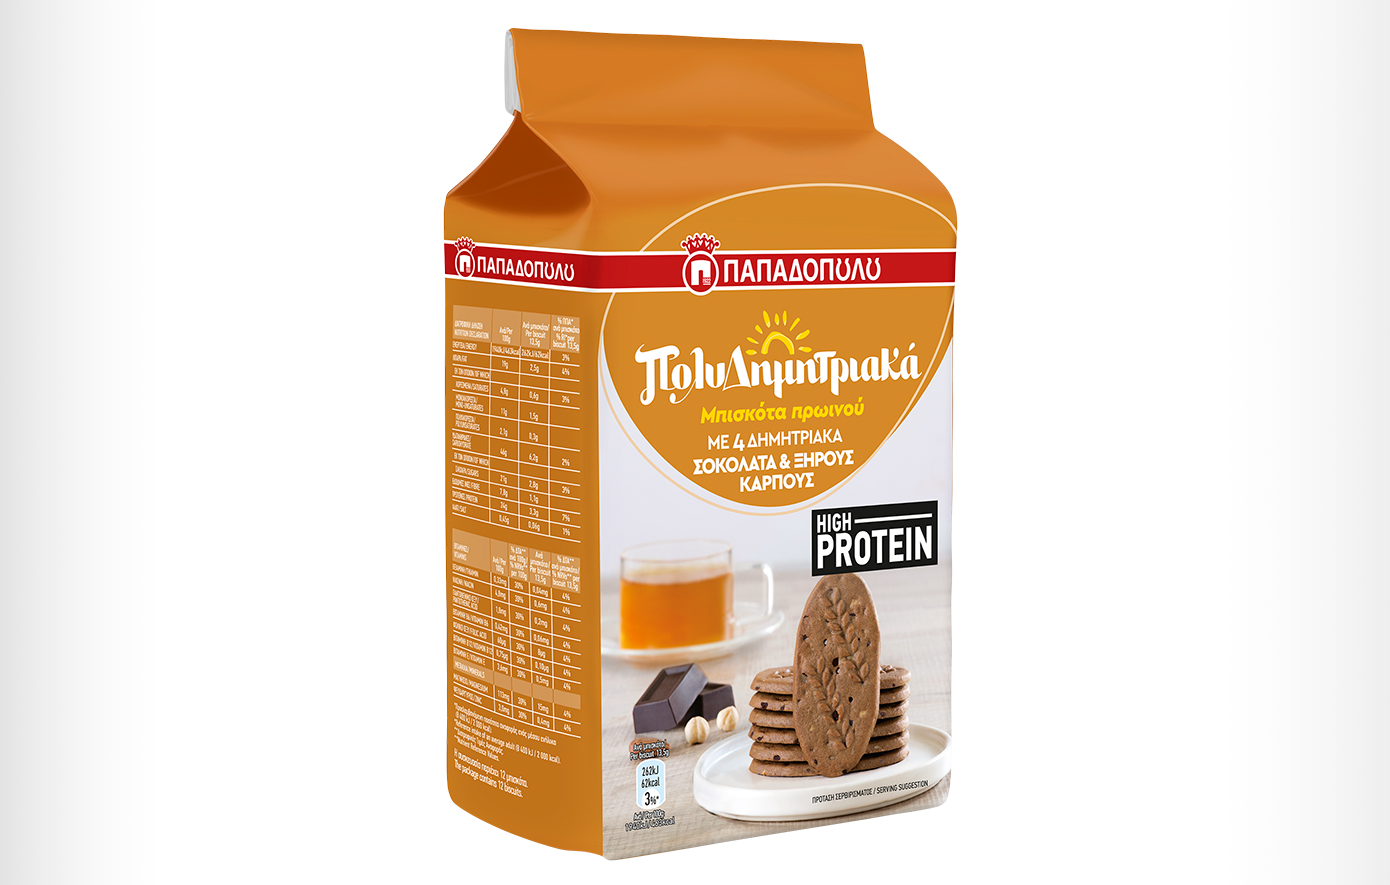 Νέα ΠολυΔημητριακά μπισκότα πρωινού High Protein από την ΠΑΠΑΔΟΠΟΥΛΟΣ Α.Ε.